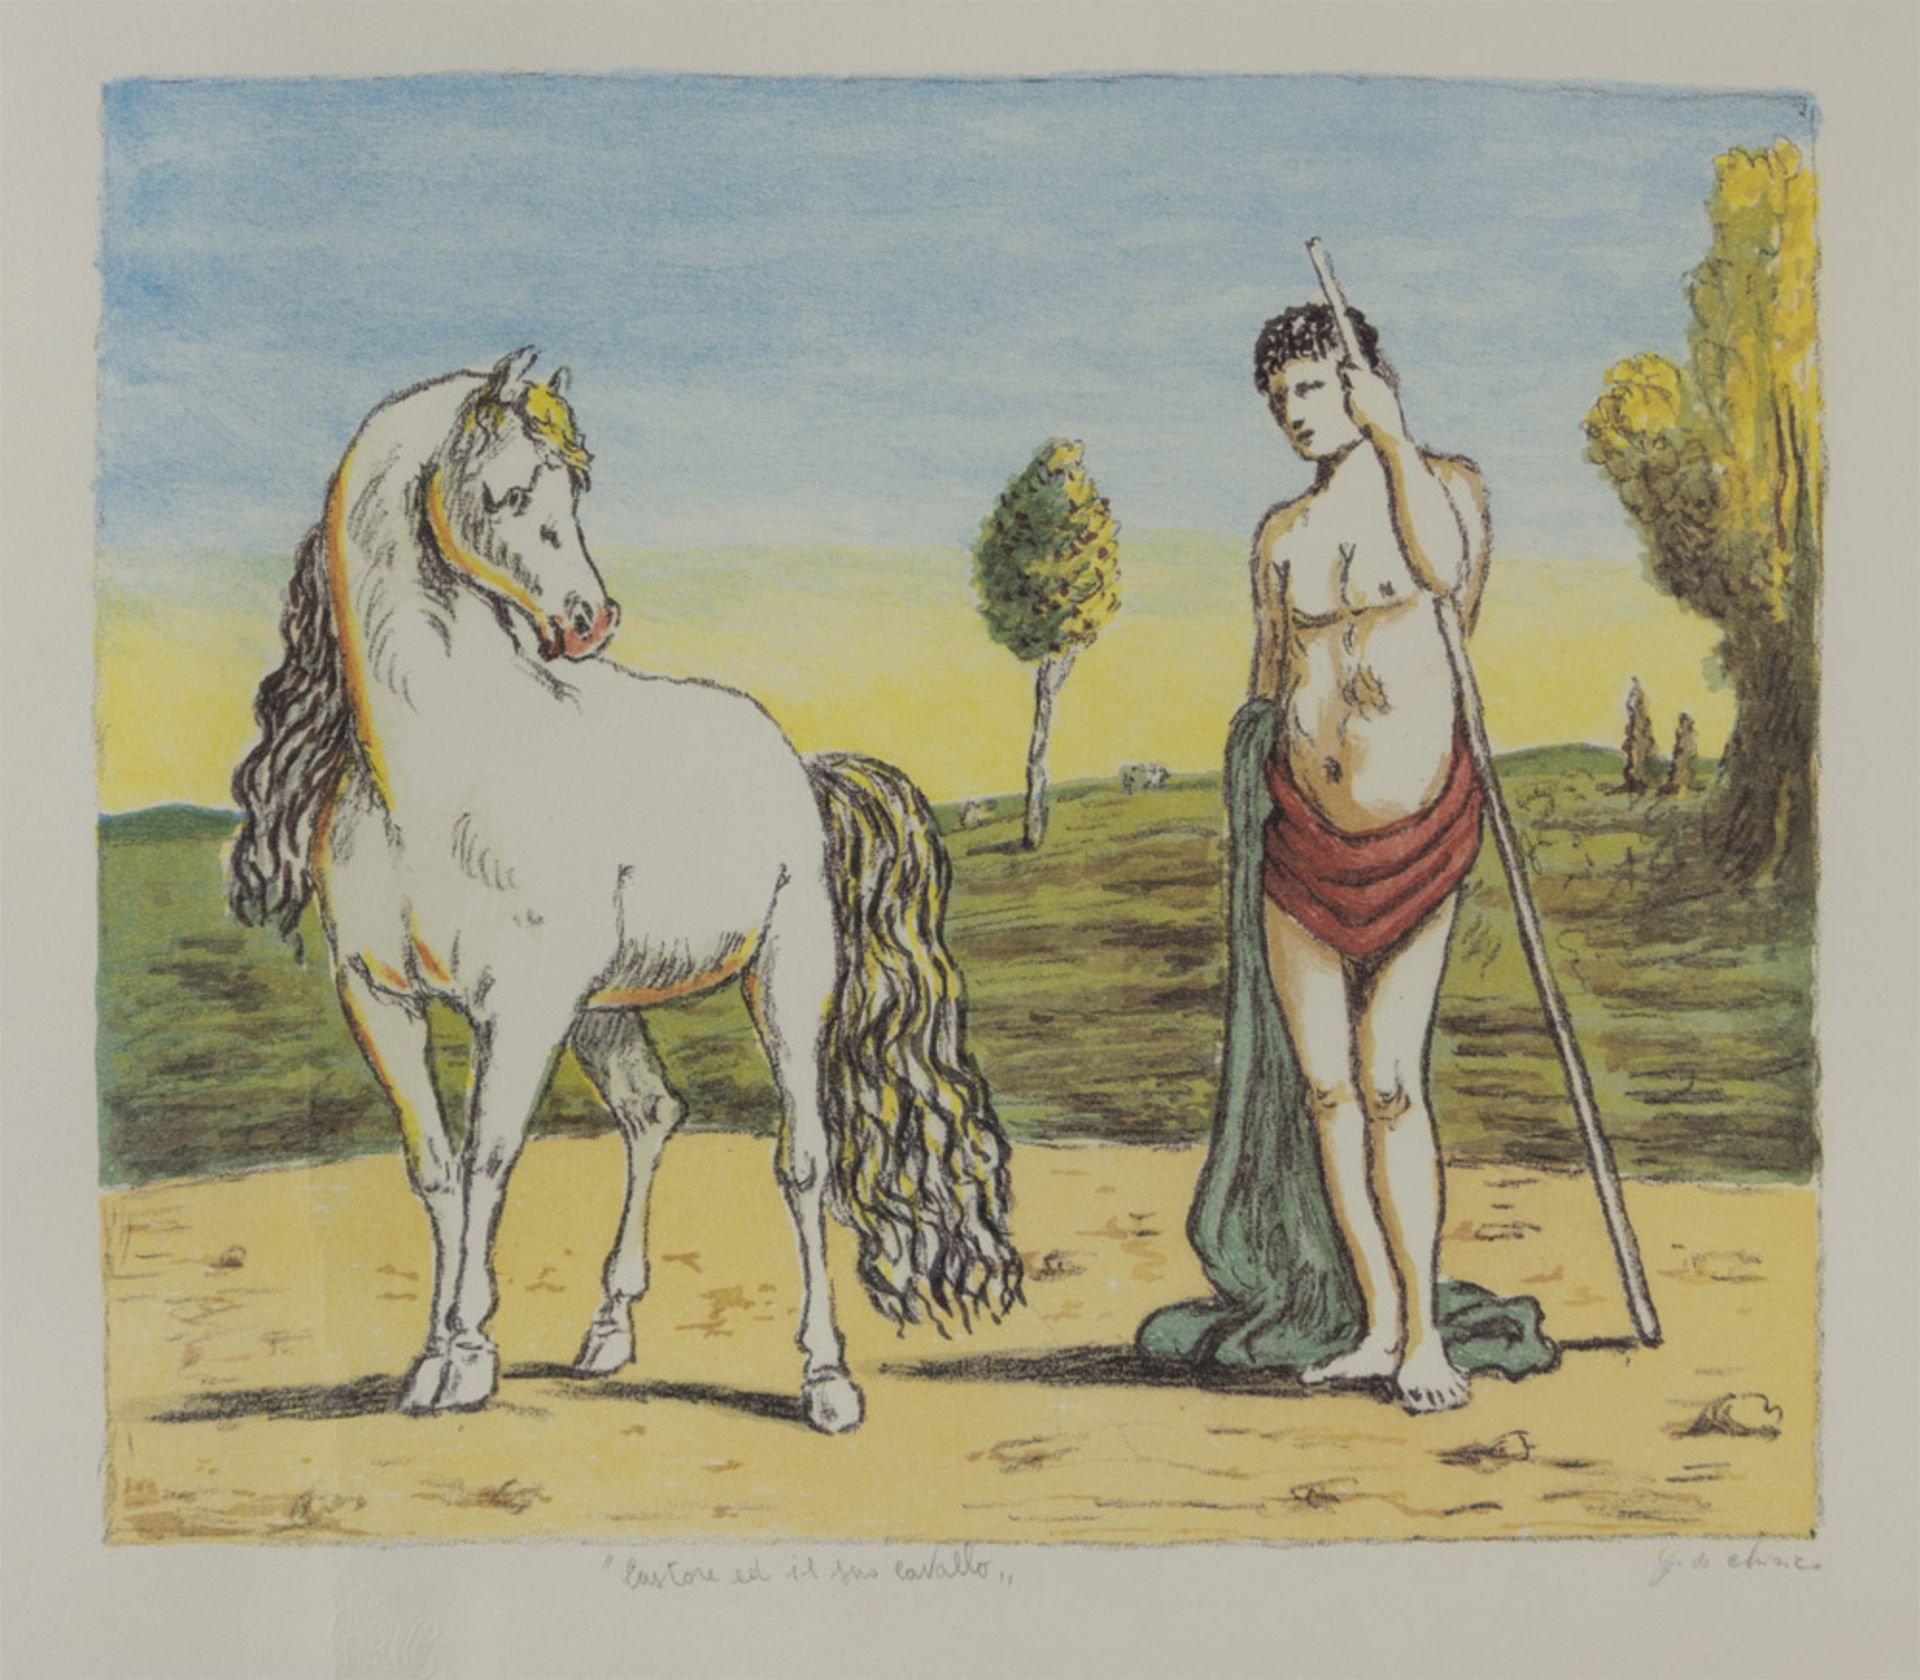 GIORGIO DE CHIRICO (Volos 1888 - Roma 1978) Castore e il suo cavallo, 1970 Litografia a colori,